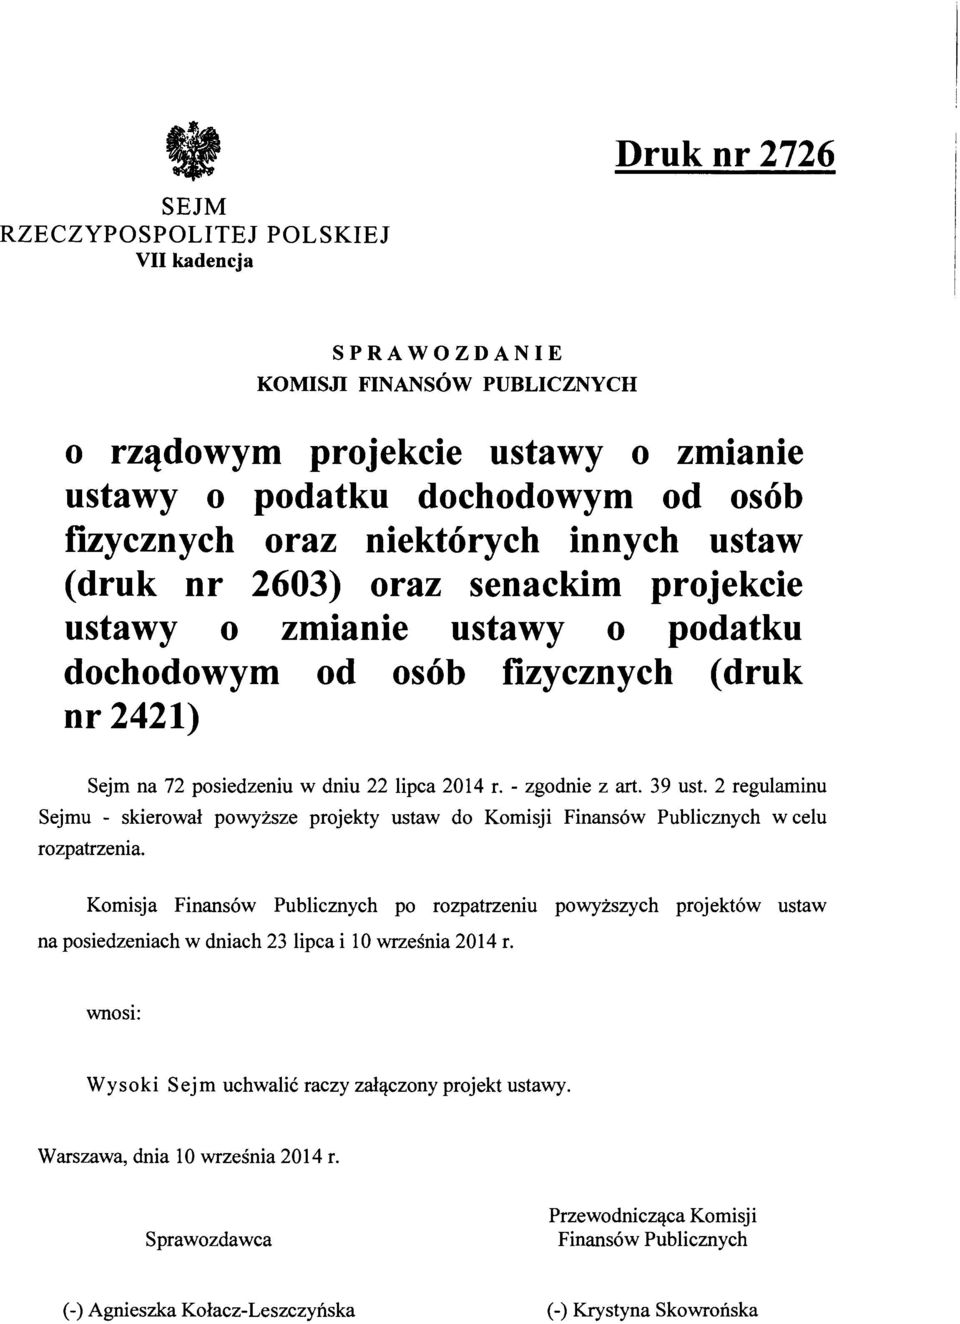 - zgodnie z art. 39 ust. 2 regulaminu Sejmu - skierował powyższe projekty ustaw do Komisji Finansów Publicznych w celu rozpatrzenia.